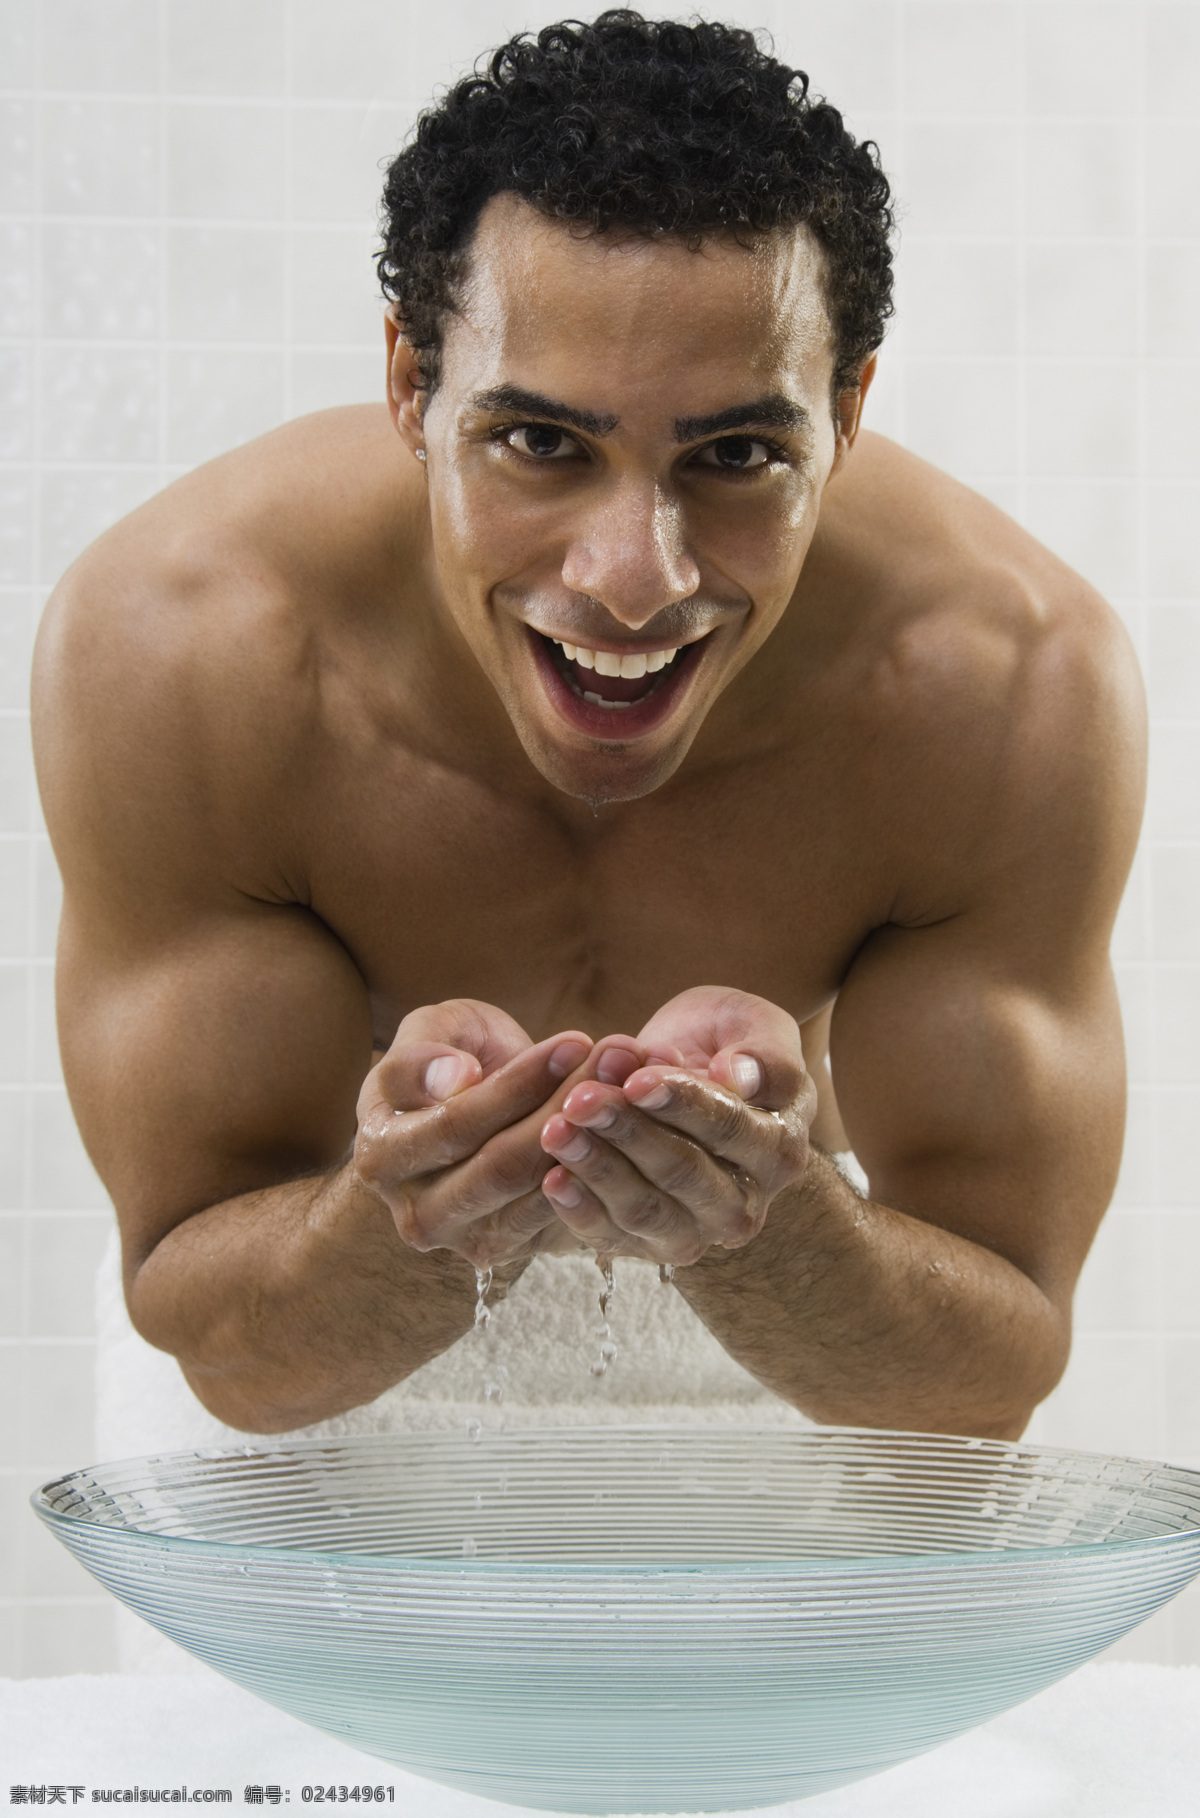 洗脸 肌肉 男 男性 男人 外国男性 肌肉男 强壮 猛男 健身 健美 运动员 男人图片 人物图片